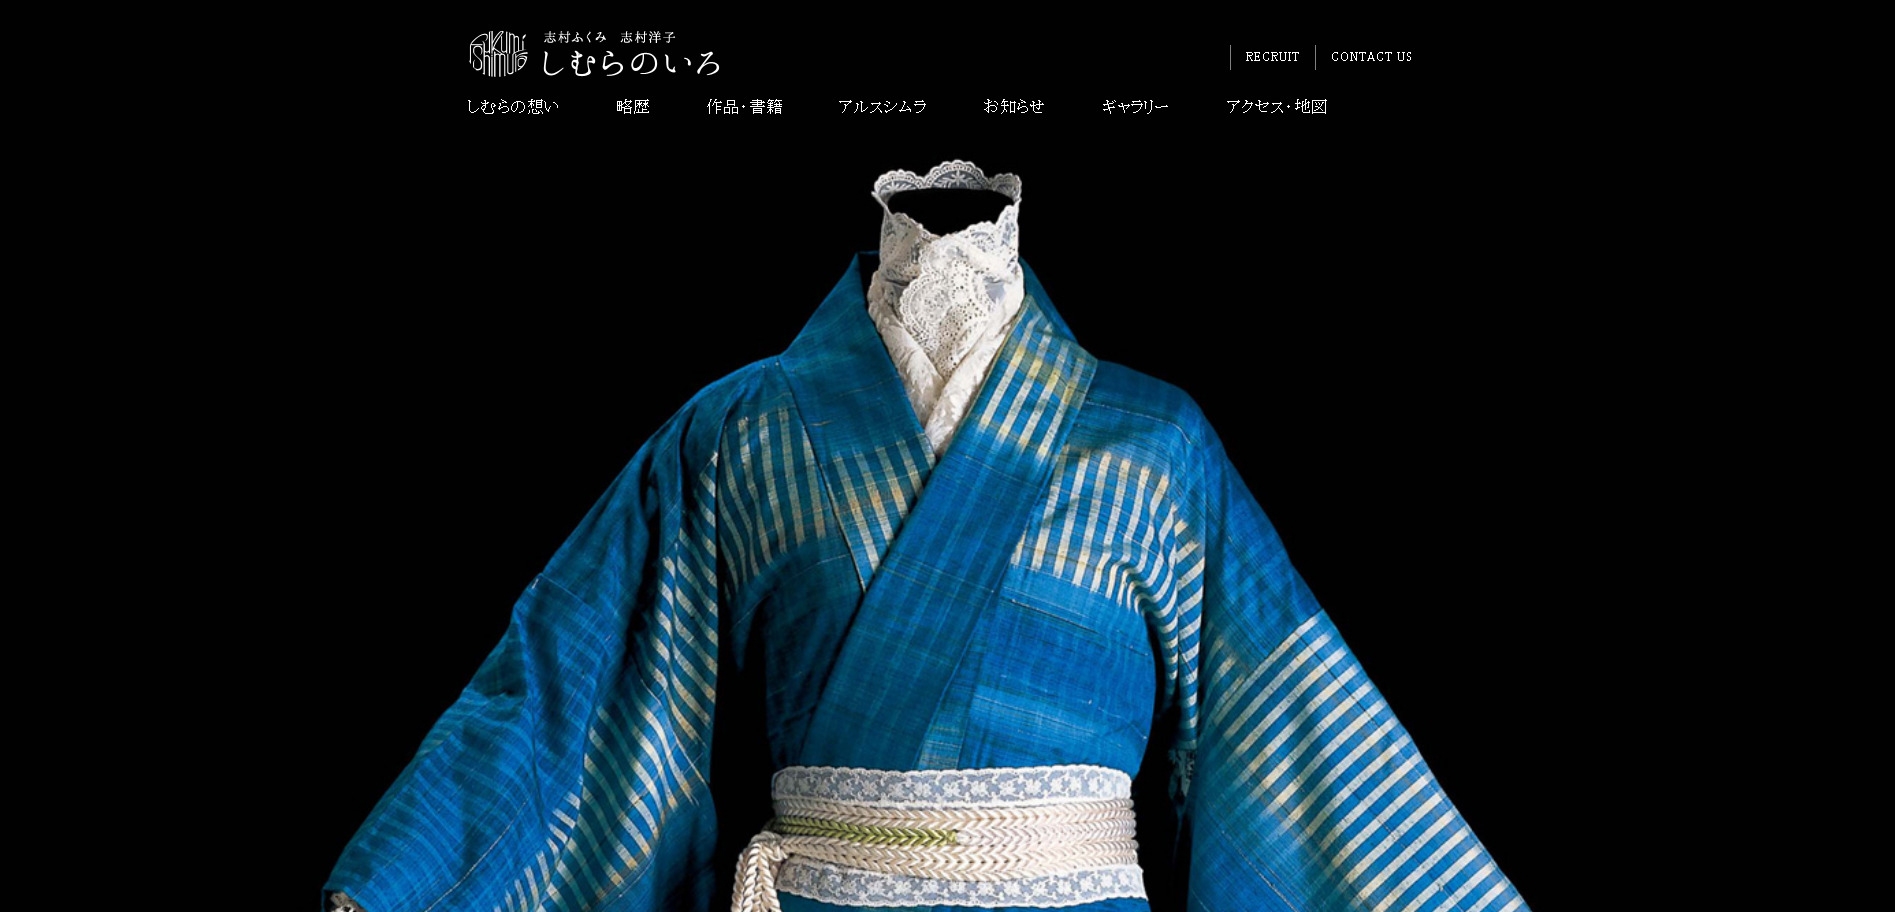 志村的颜色!日本和服礼服产品展示酷站。